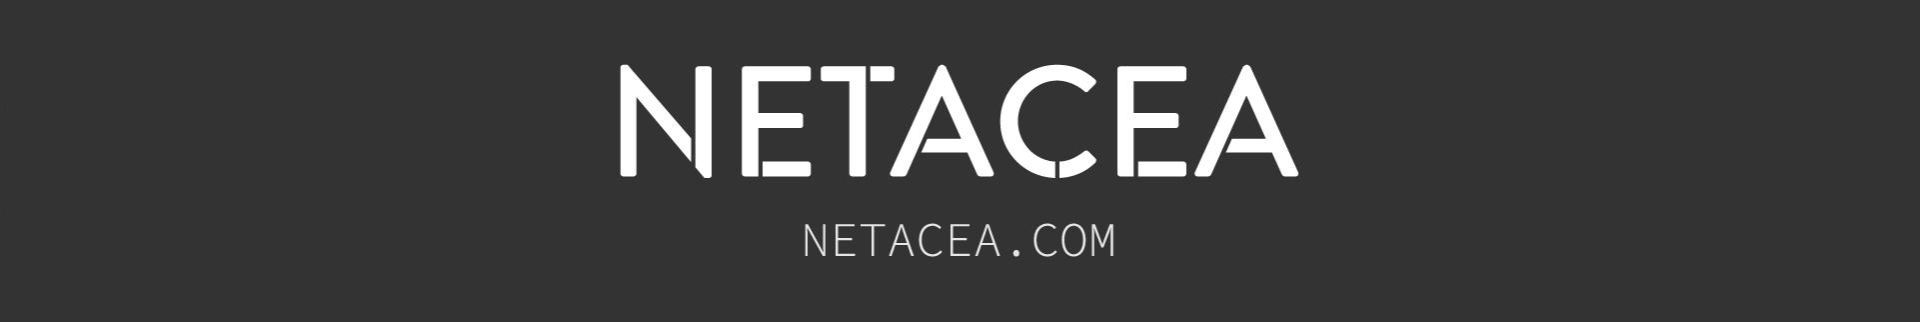 Netacea Header